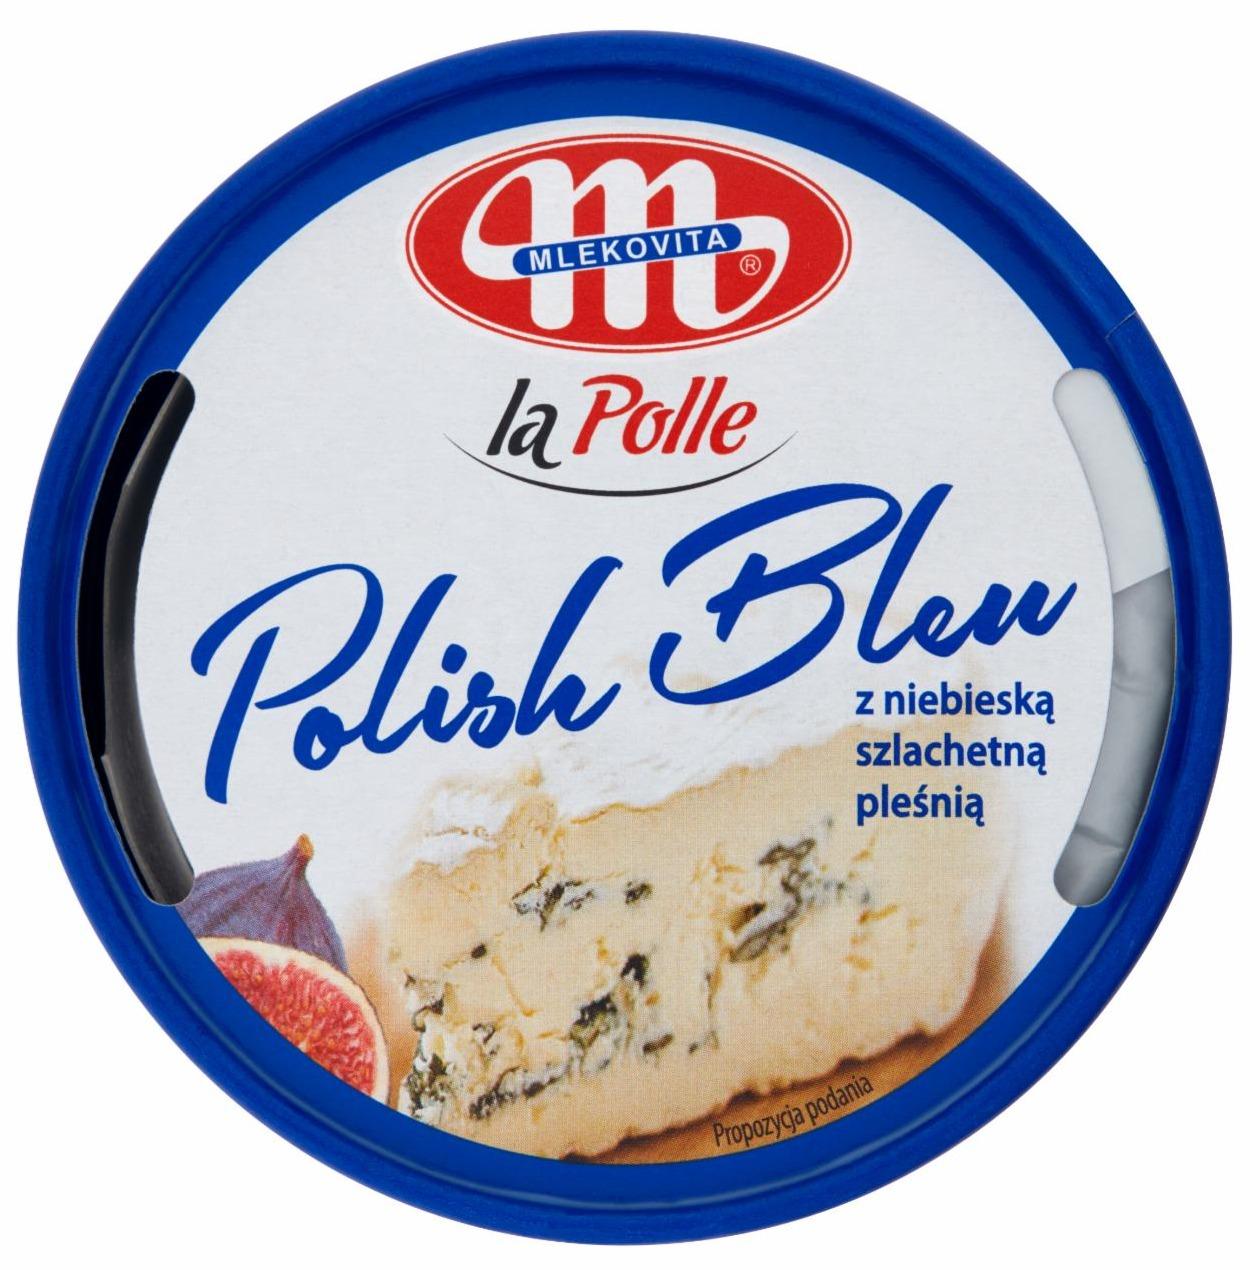 Zdjęcia - La Polle Polish Bleu z niebieską szlachetną pleśnią Mlekovita